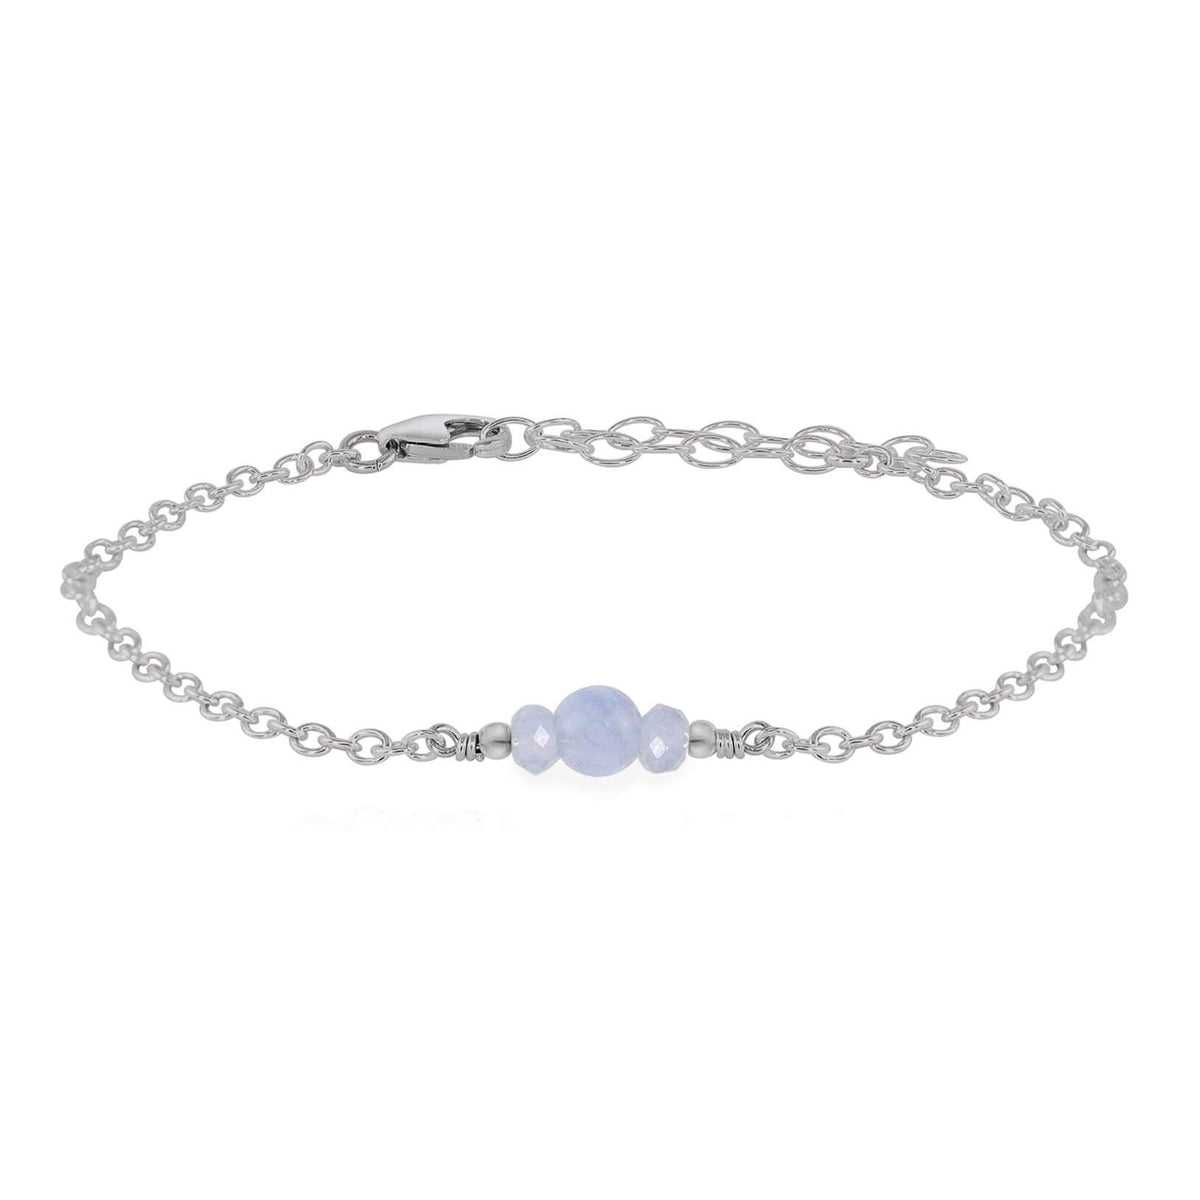 Dainty Bracelet - Blue Lace Agate - Stainless Steel - Luna Tide Handmade Jewellery